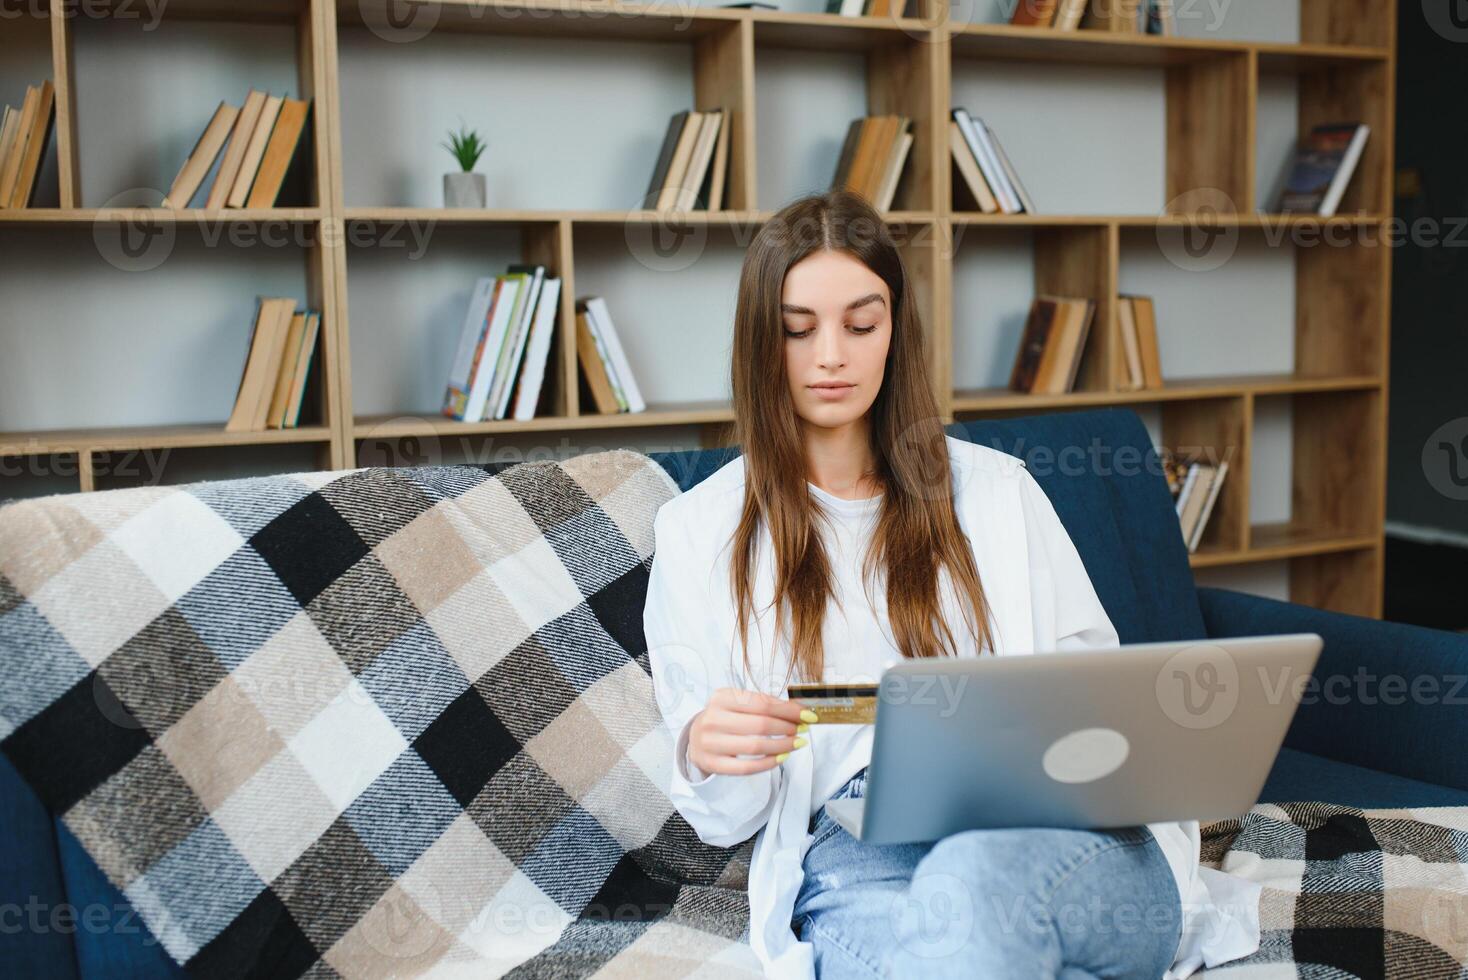 online speichern. glücklich Mädchen tun Einkaufen über Internet mit Laptop und Anerkennung Karte, Sitzung auf Couch, Copyspace foto